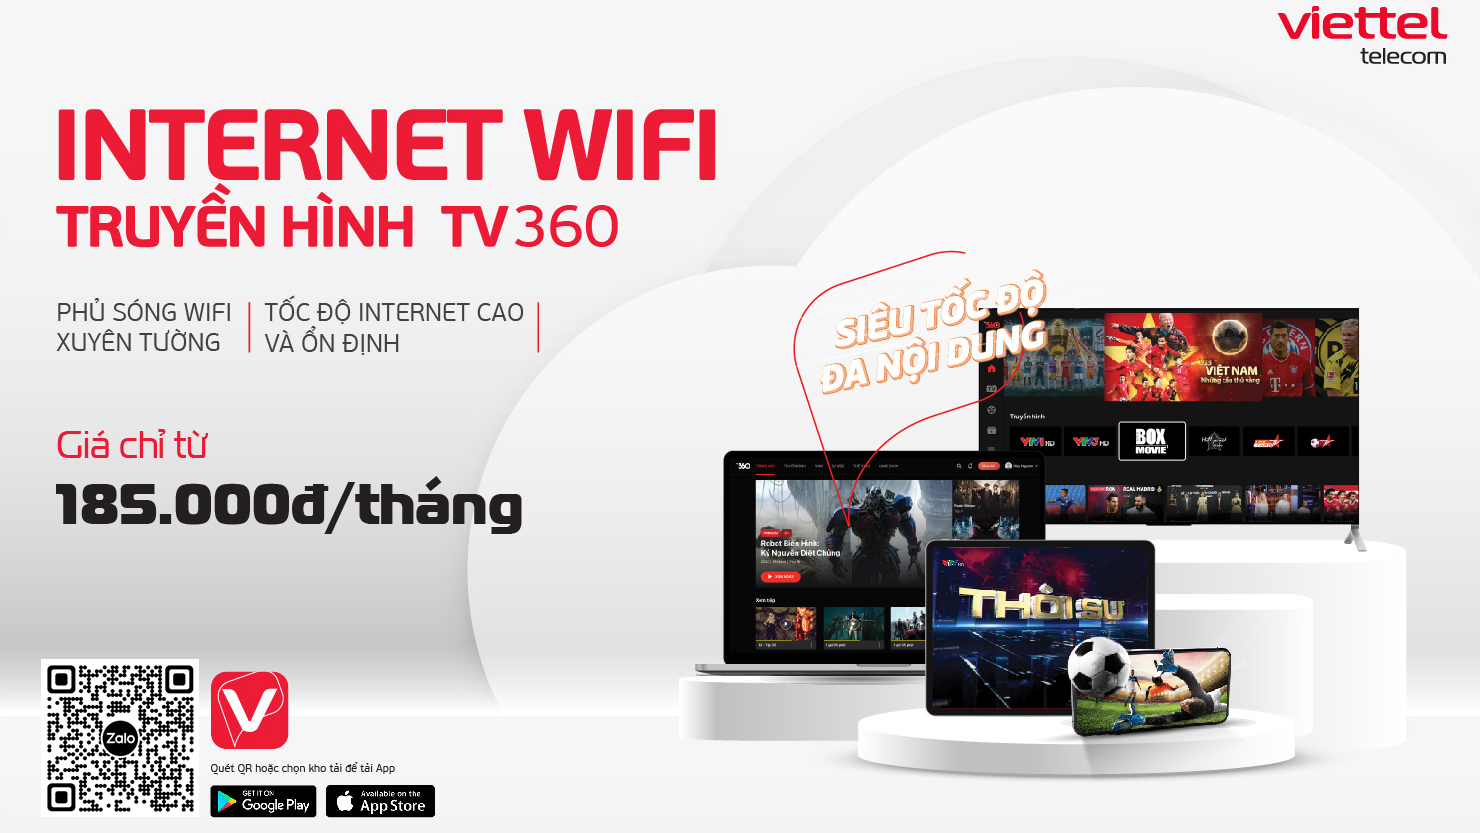 Bảng giá trọn gói Internet + Truyền hình Viettel tại Tây Ninh